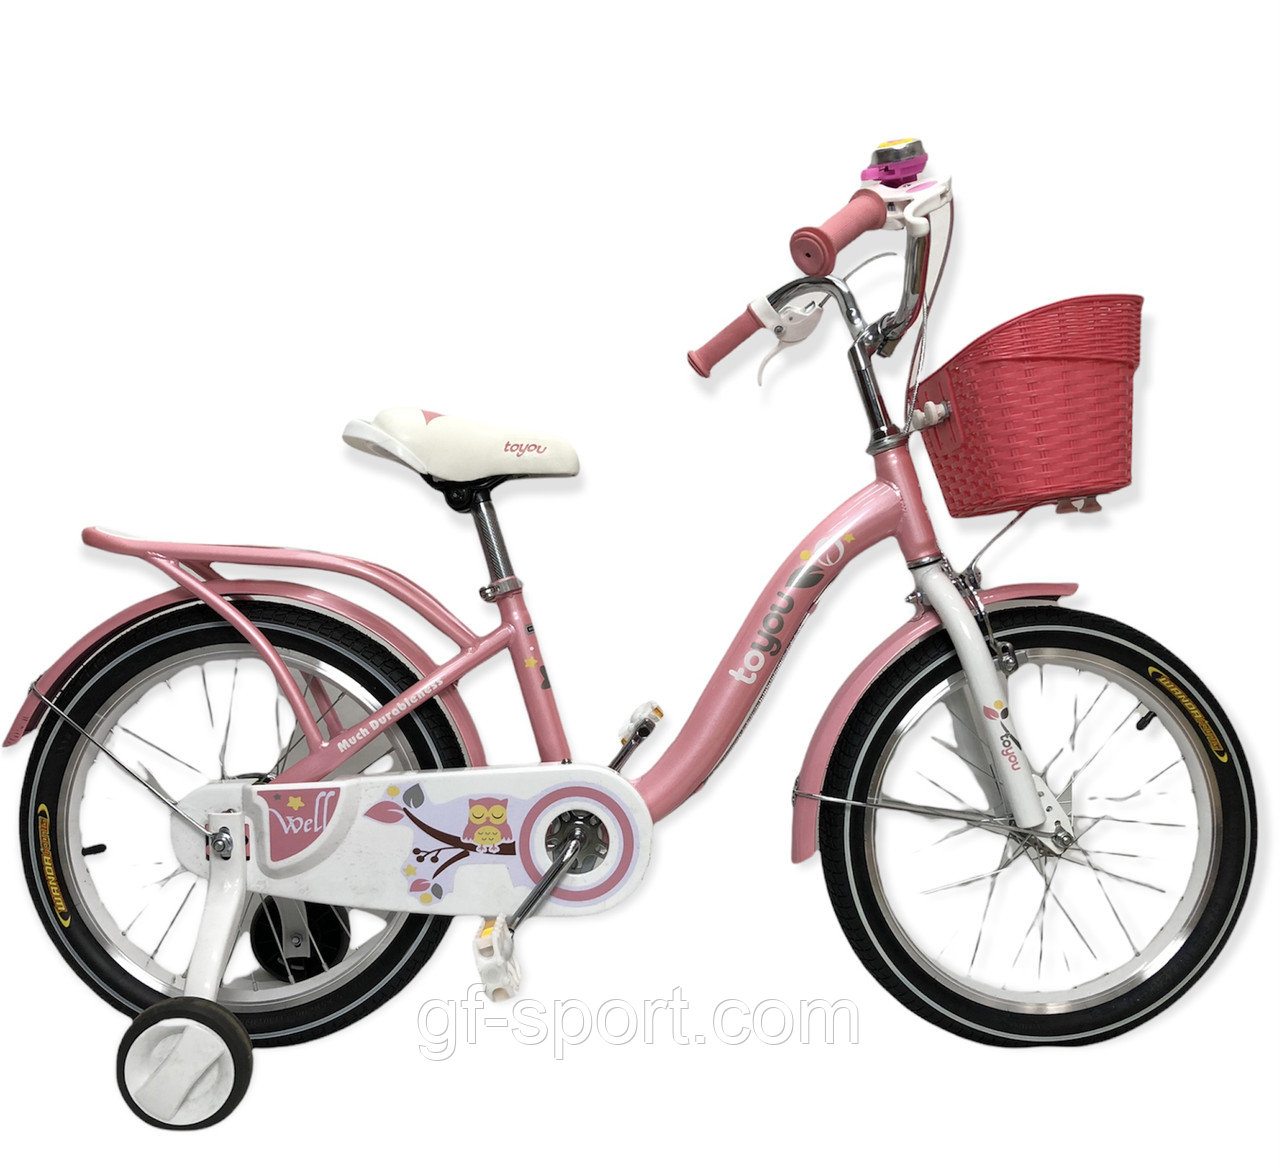 Велосипед Phoenix розовый оригинал детский с холостым ходом 18 размер (517-18)